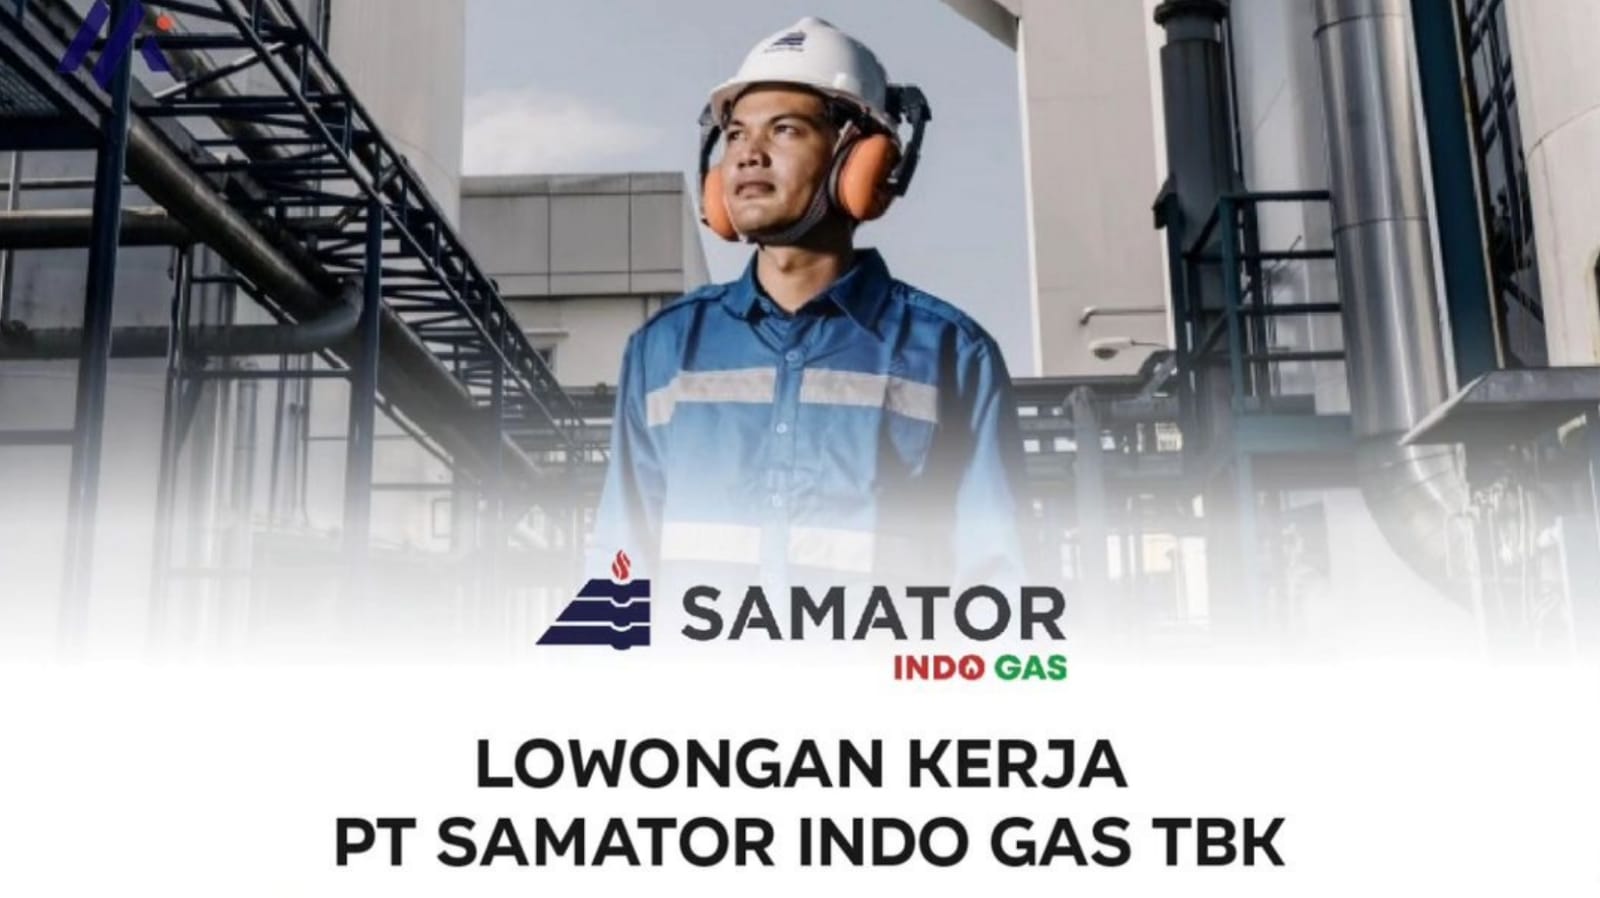 PT Samator Indo Gas Tbk membuka lowongan kerja terbaru Lulusan S1 Penempatan All Wilayah